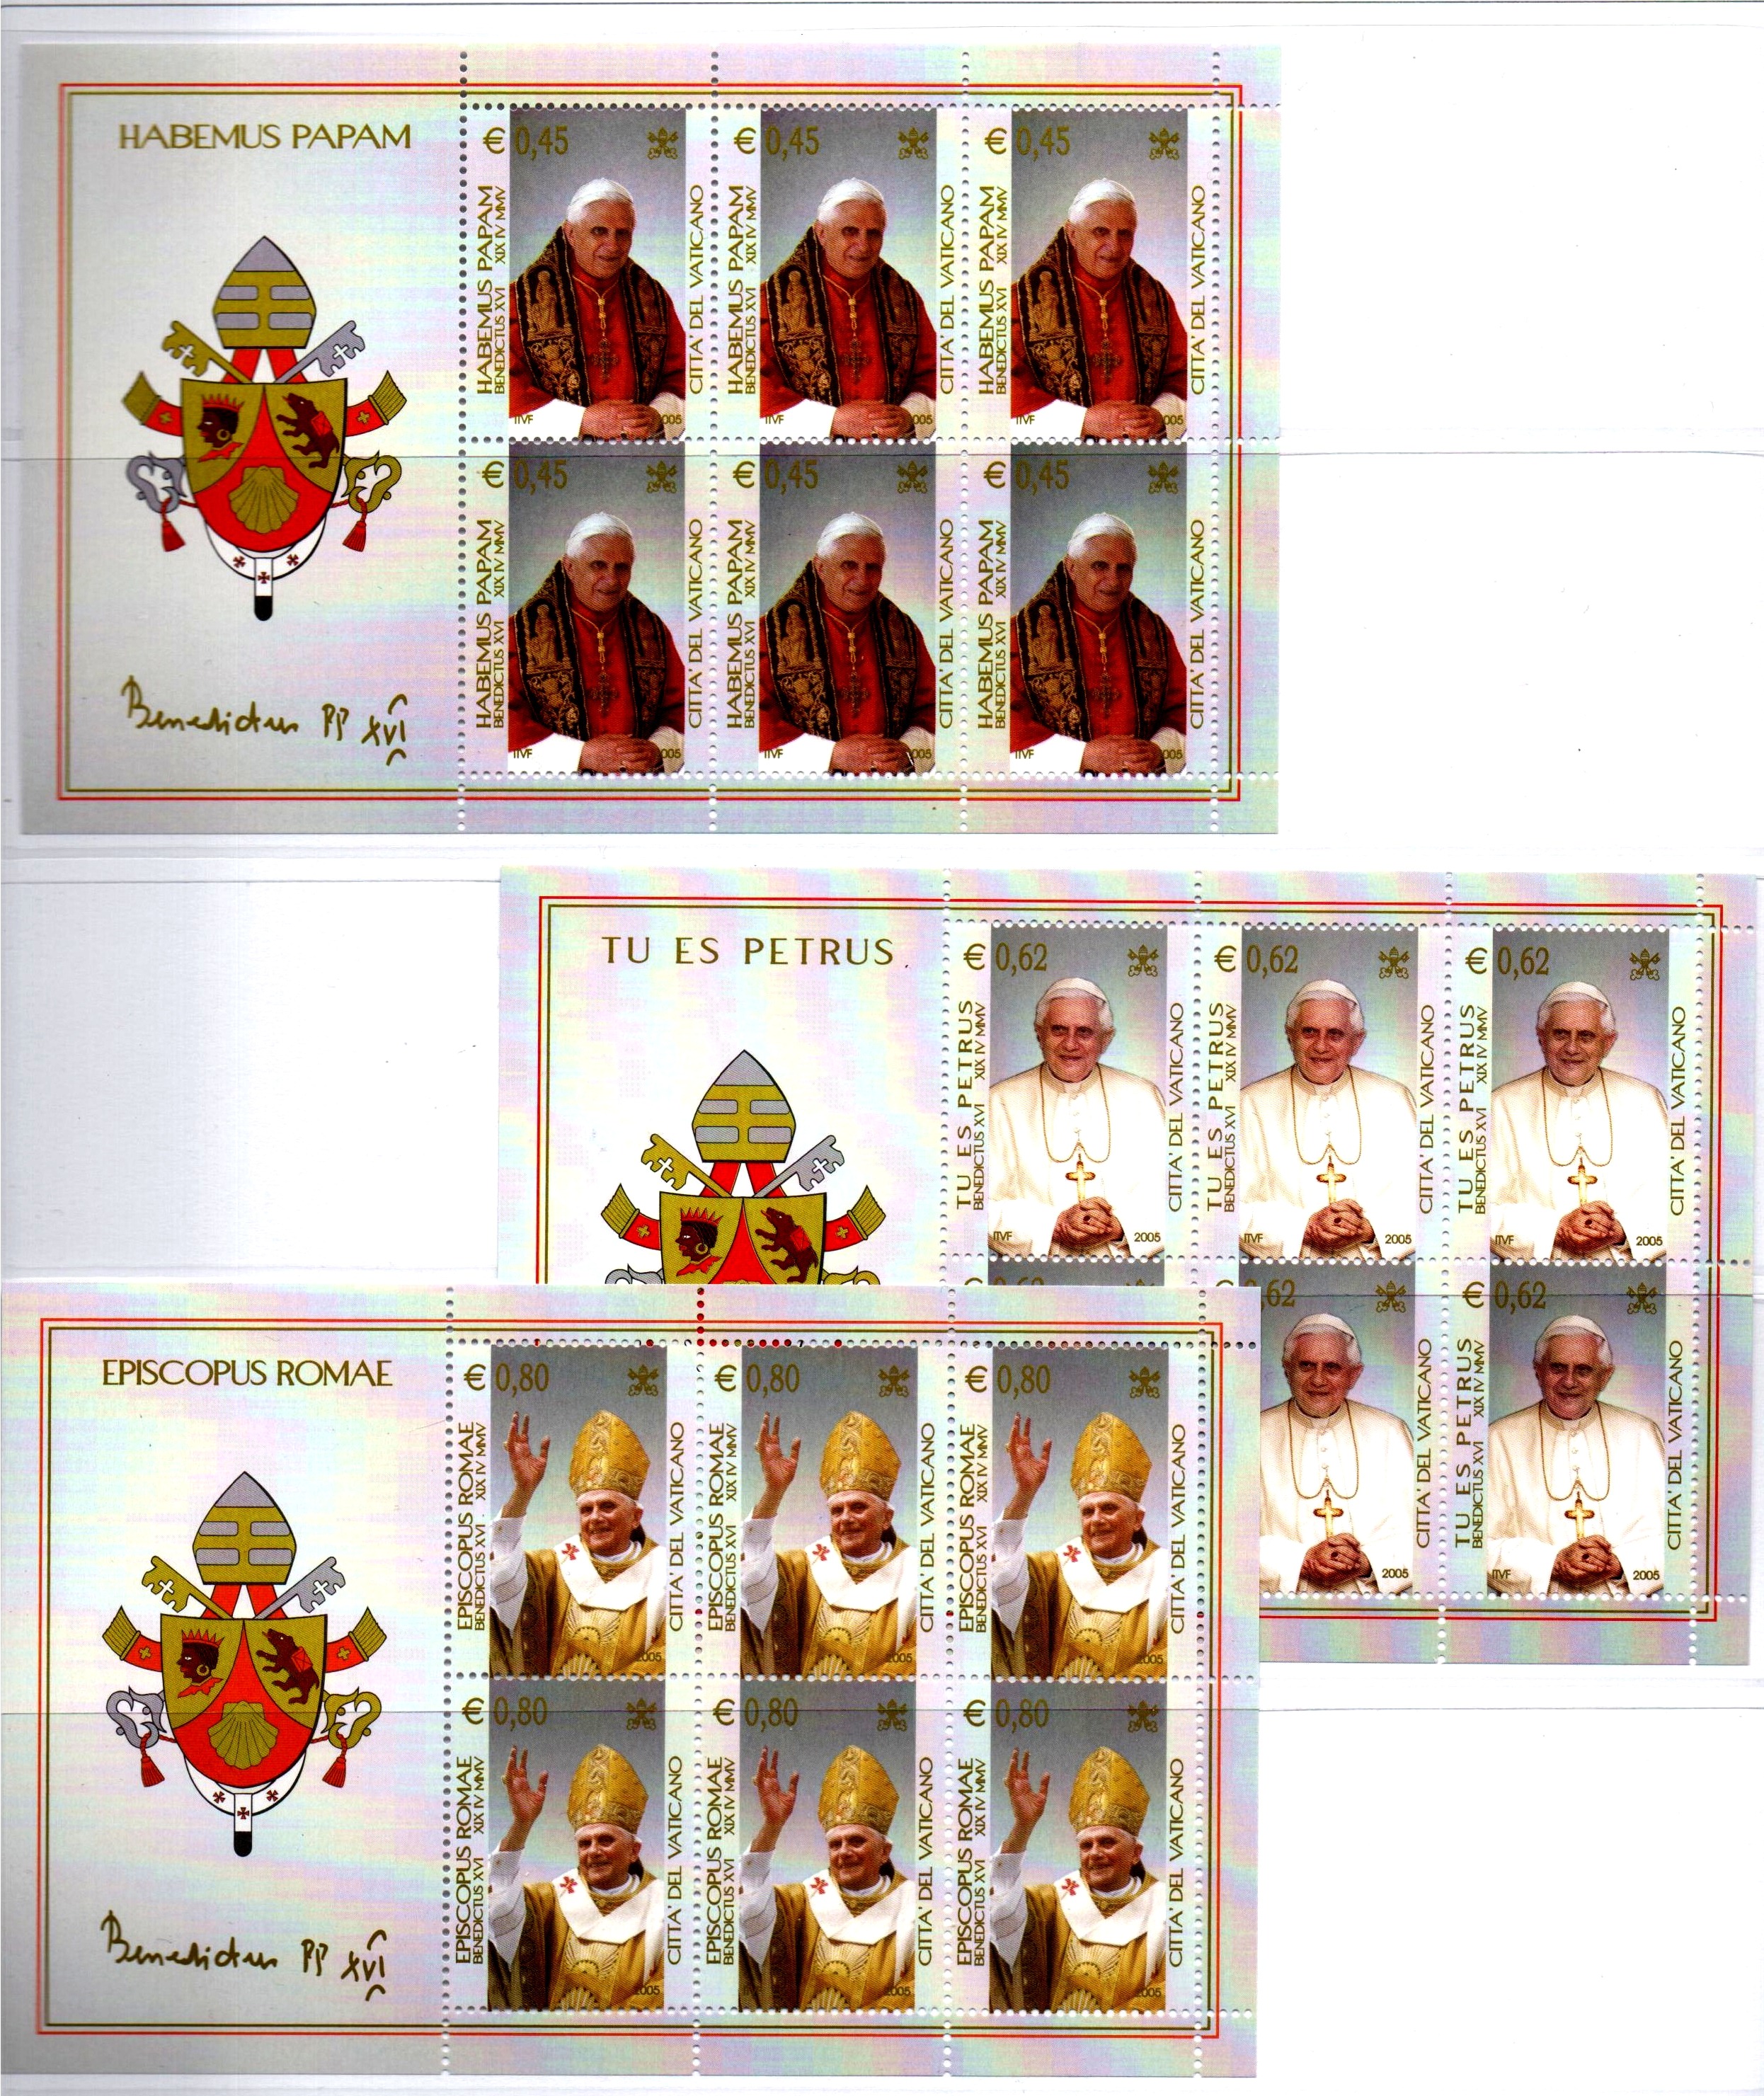 2005 Minifogli Inizio pontificato papa Benedetto XVI